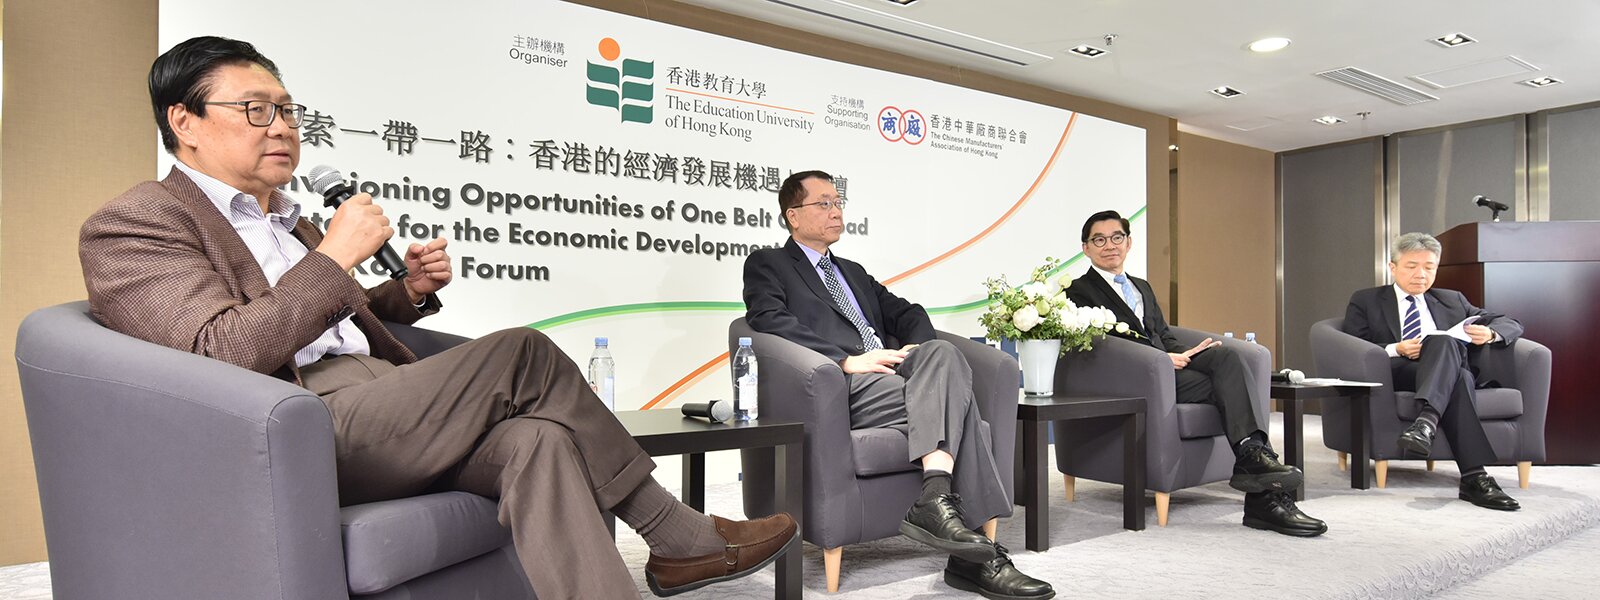 教大論壇探討一帶一路香港發展機遇